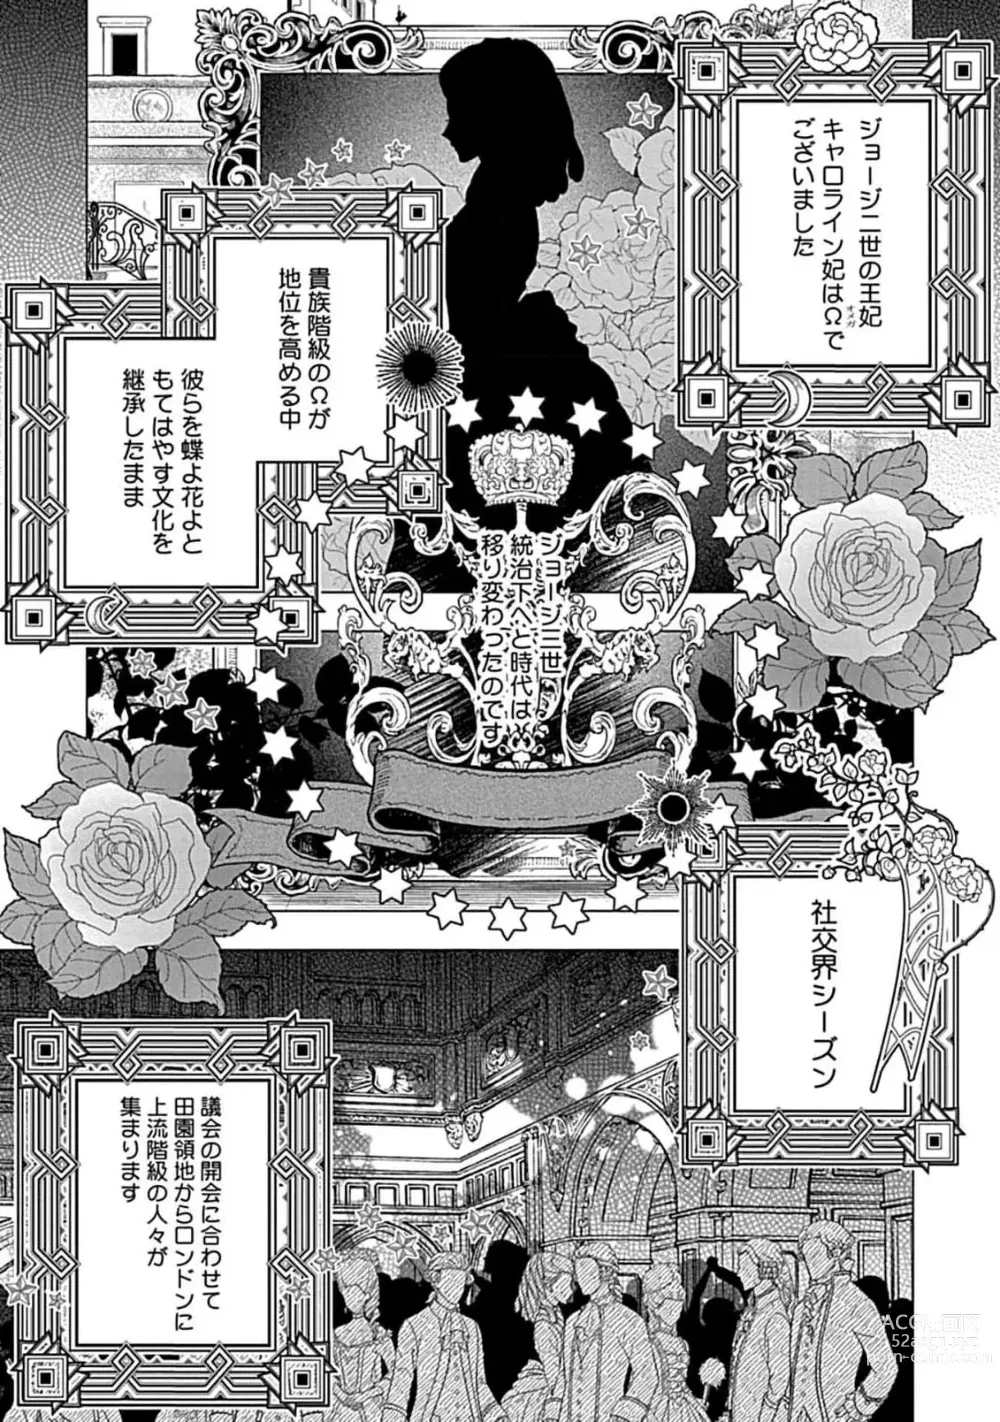 Page 3 of manga Hoshikuzu no Debutante - Debutante of Stardust 1